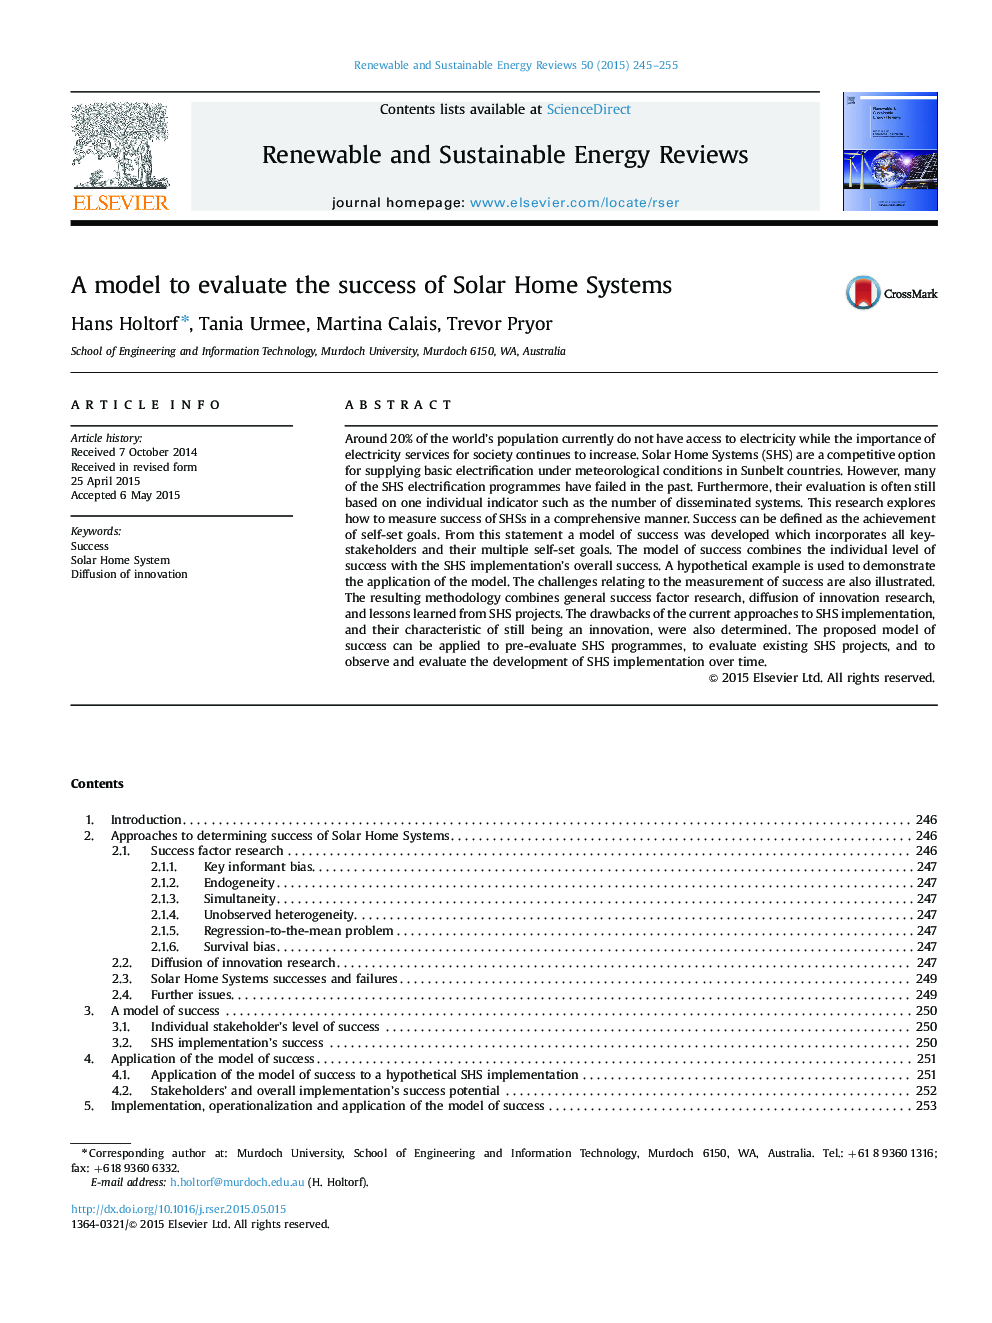 یک مدل برای ارزیابی موفقیت سیستم های خورشیدی 